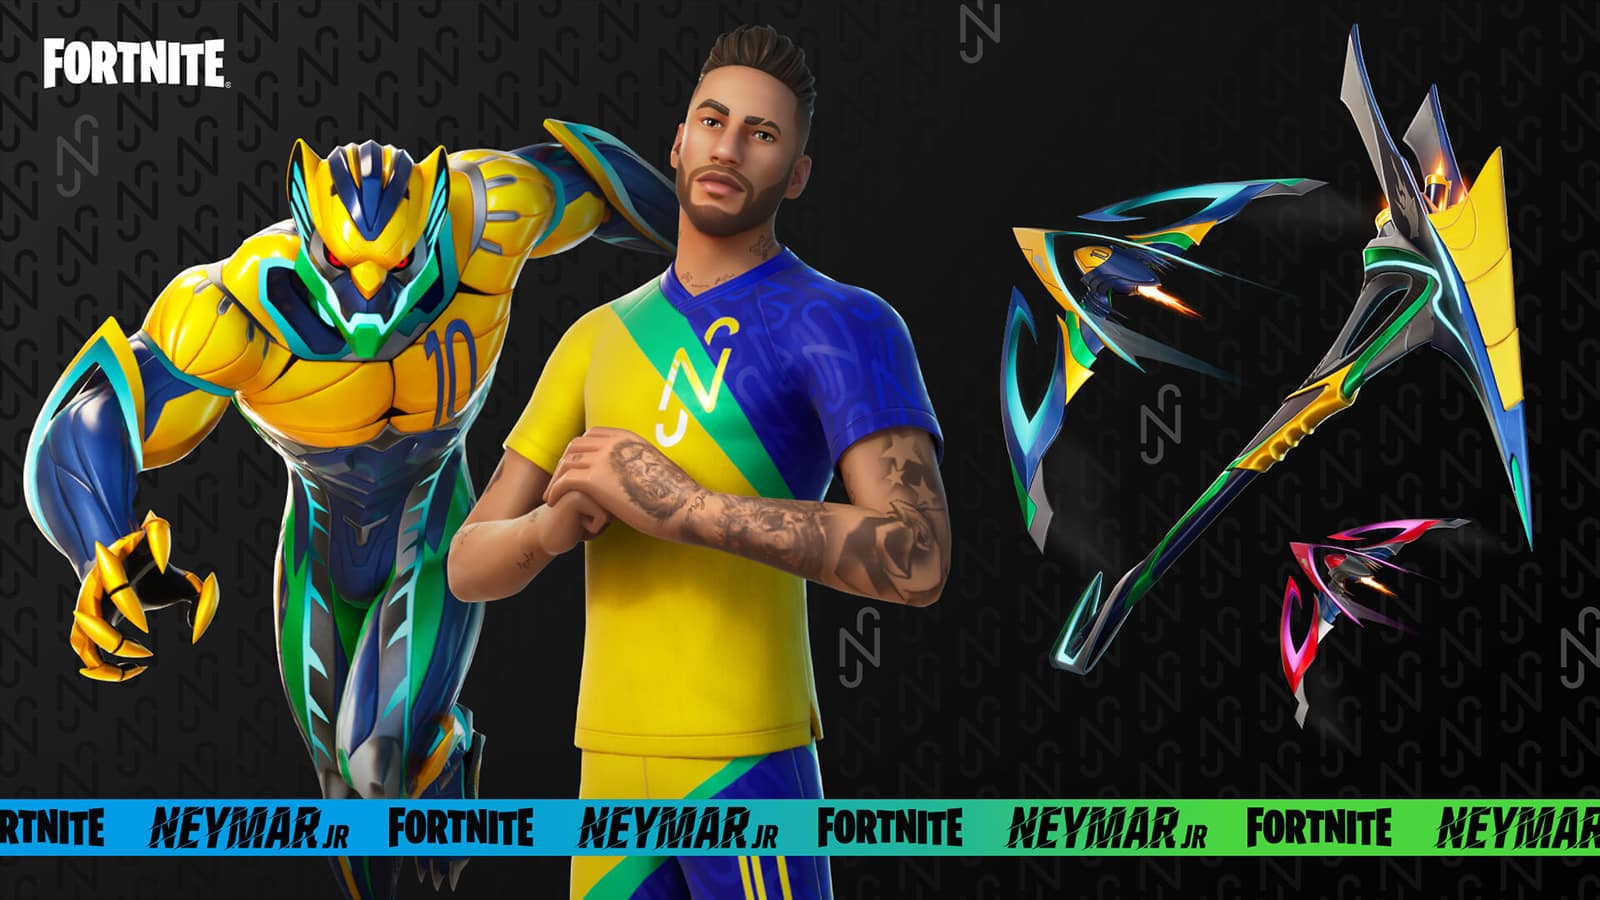 Fortnite Neymar Jr Exhibition Styles